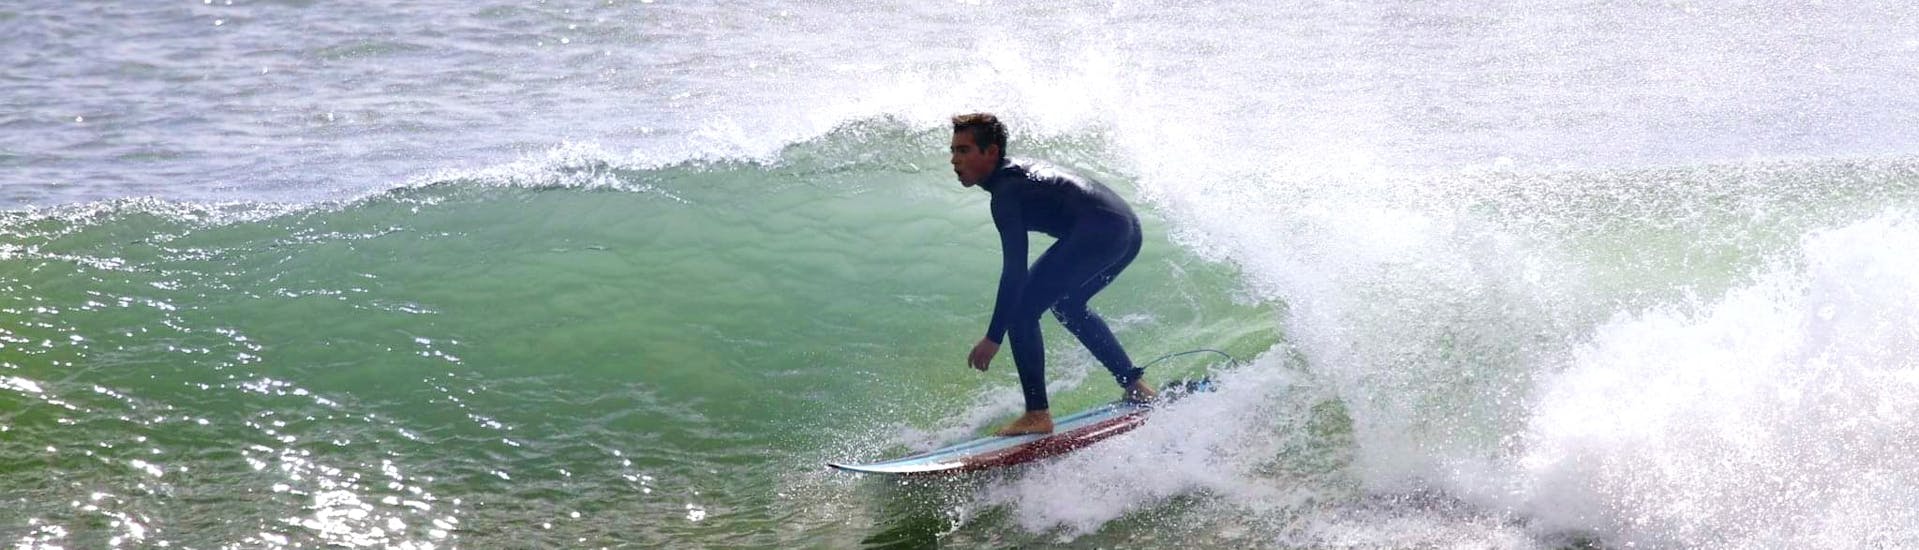 Cours privé de surf à Costa da Caparica (dès 4 ans) pour Tous niveaux.